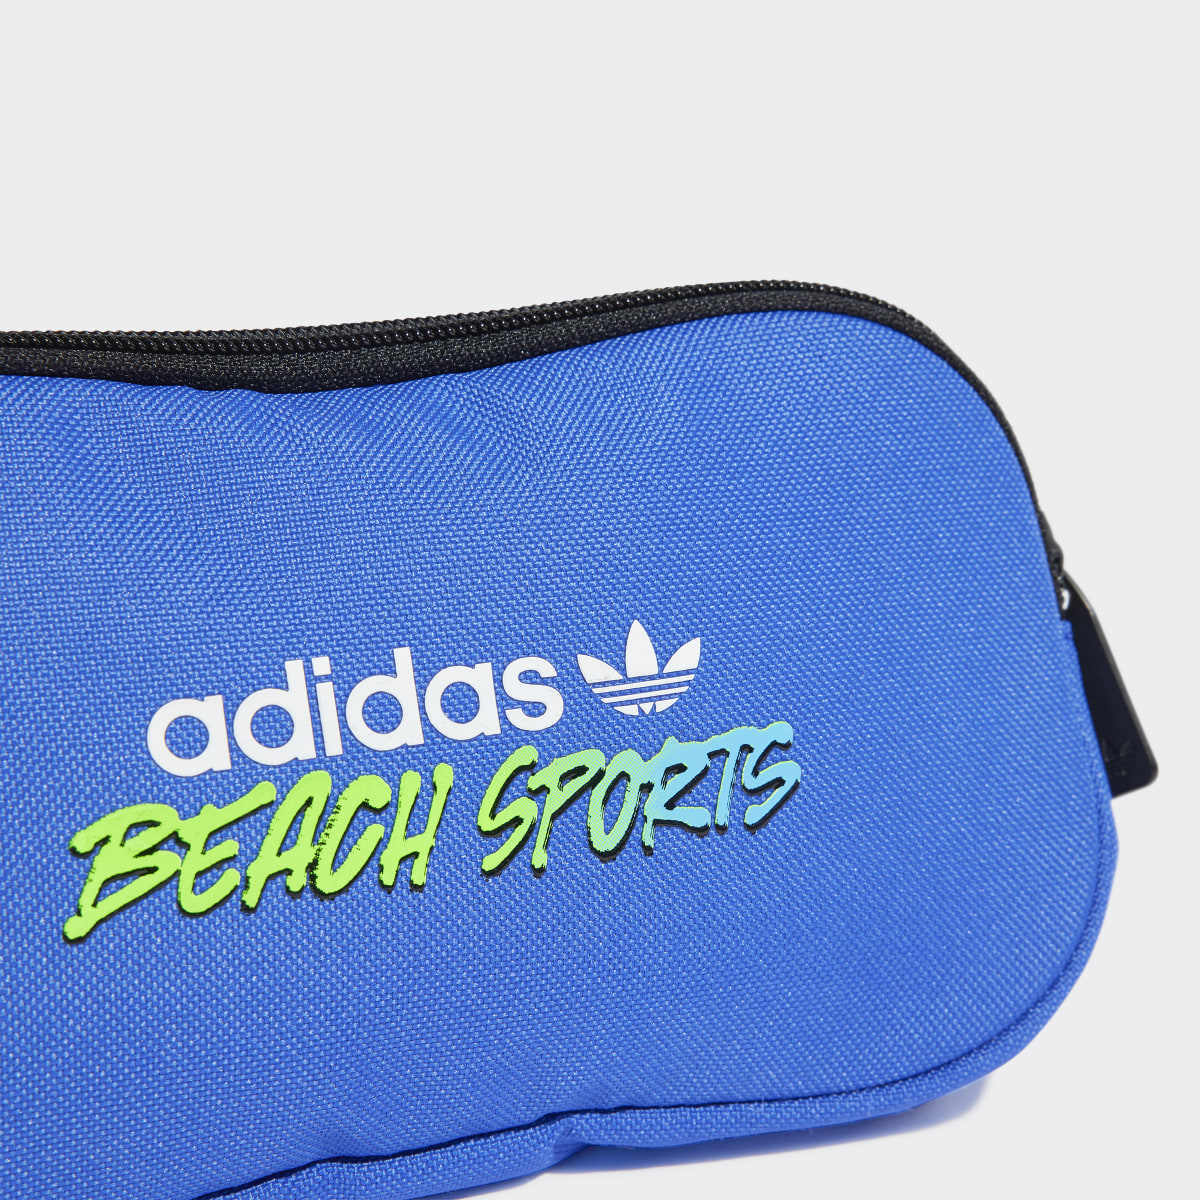 Adidas Beach Sports Waist Bag. 6